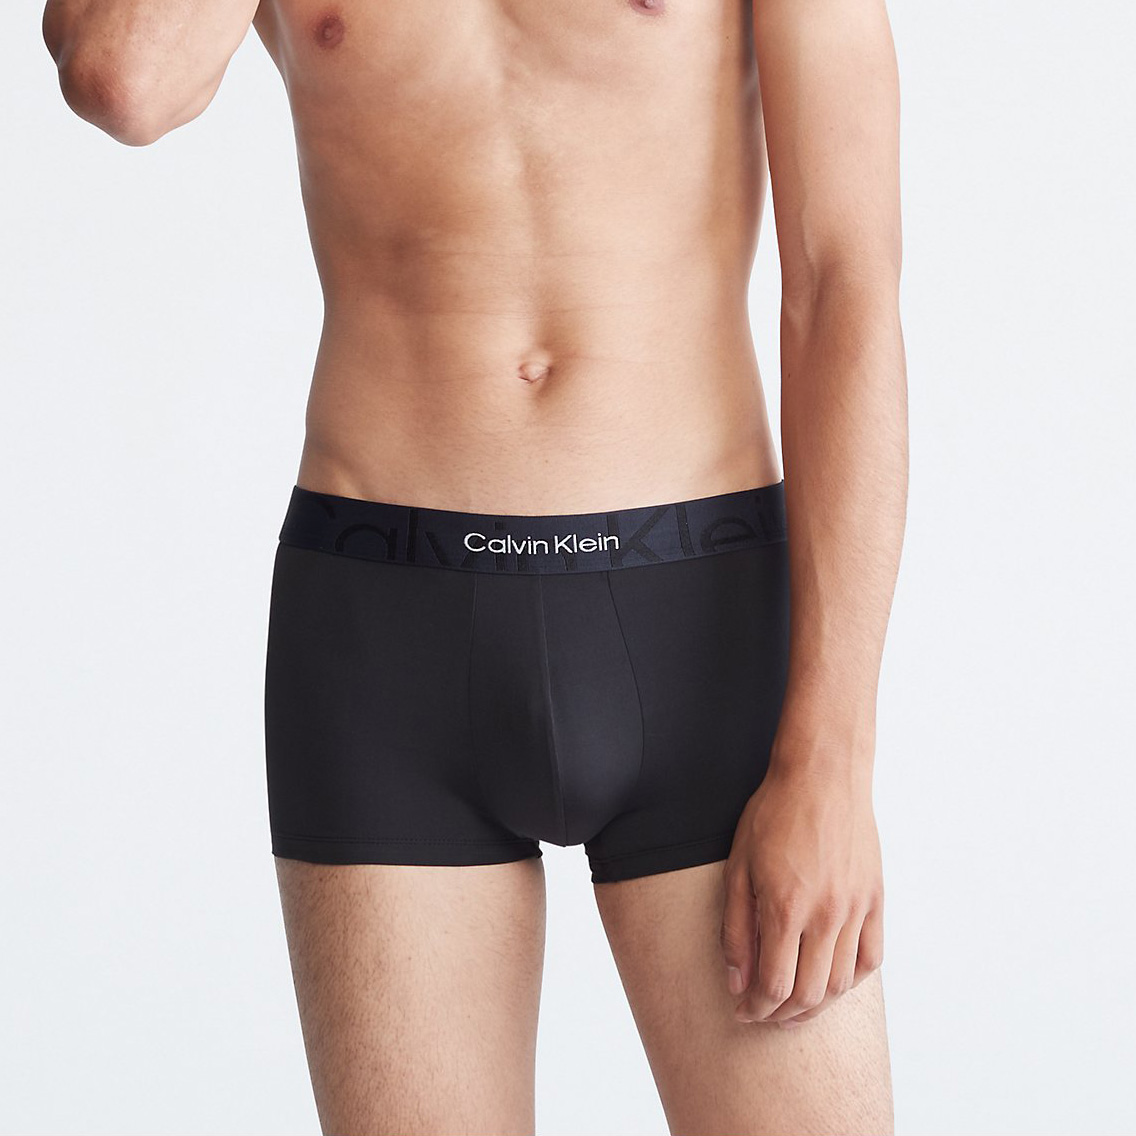 【ネコポス可:2点まで】[NB3312-001] Calvin Klein カルバンクライン ボクサーパンツ メンズ アンダーウェア インナー 男性 下着 ブラン